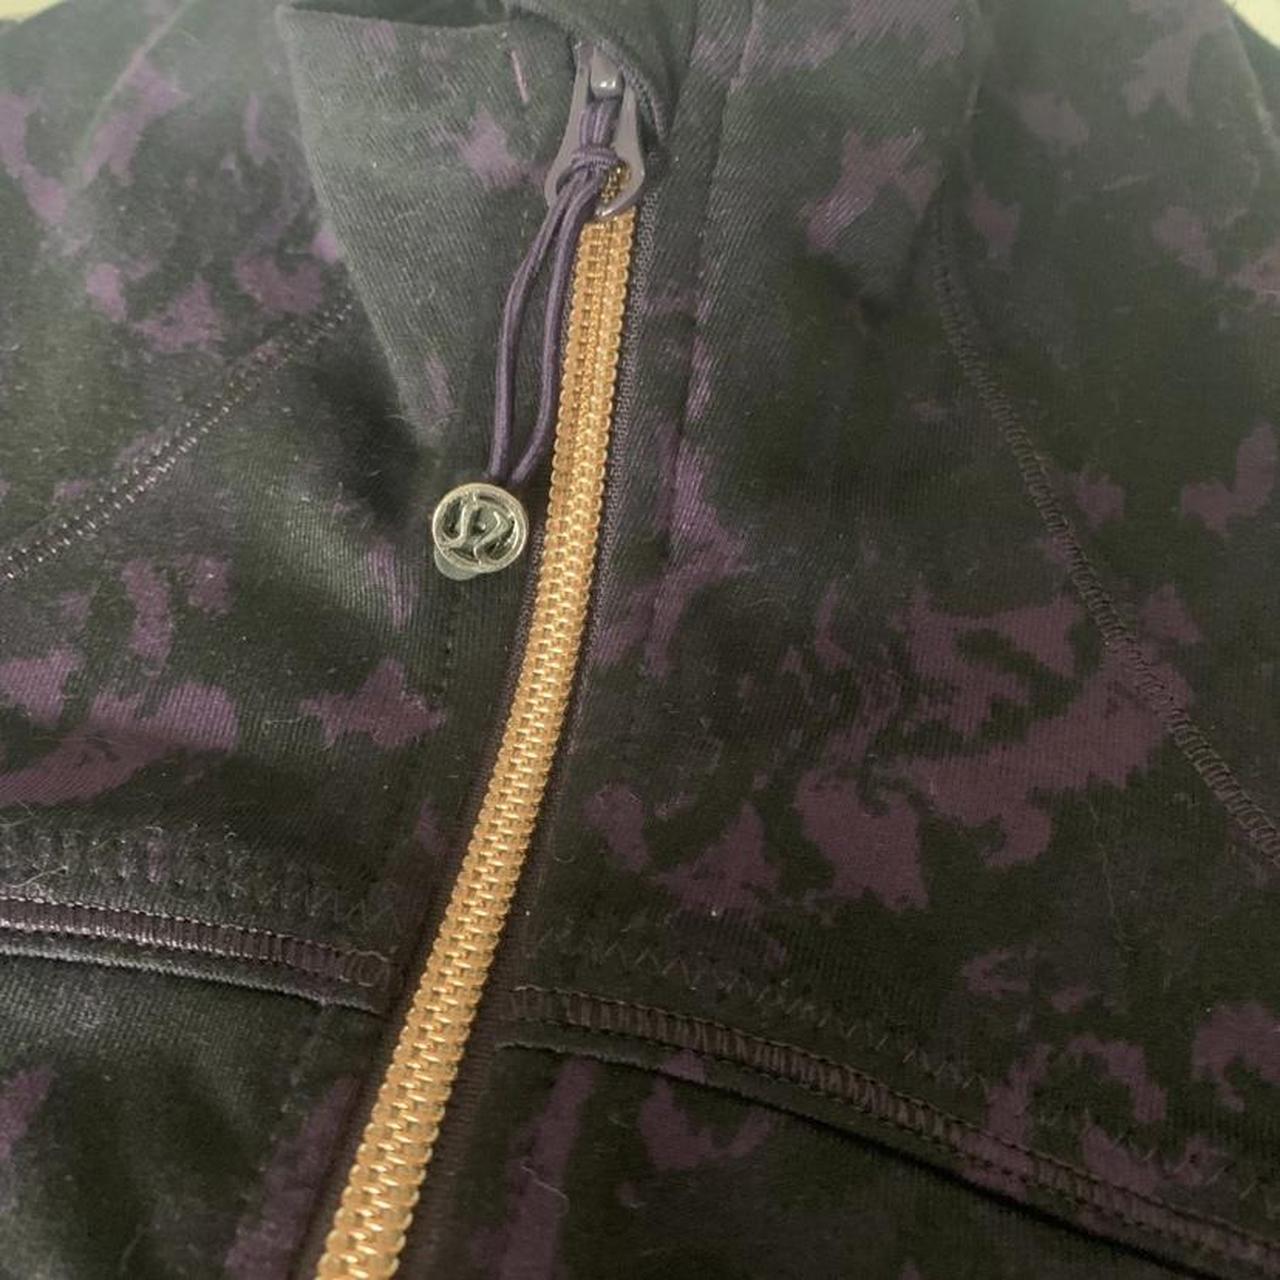 Rare purple and black align lululemon jacket... - Depop